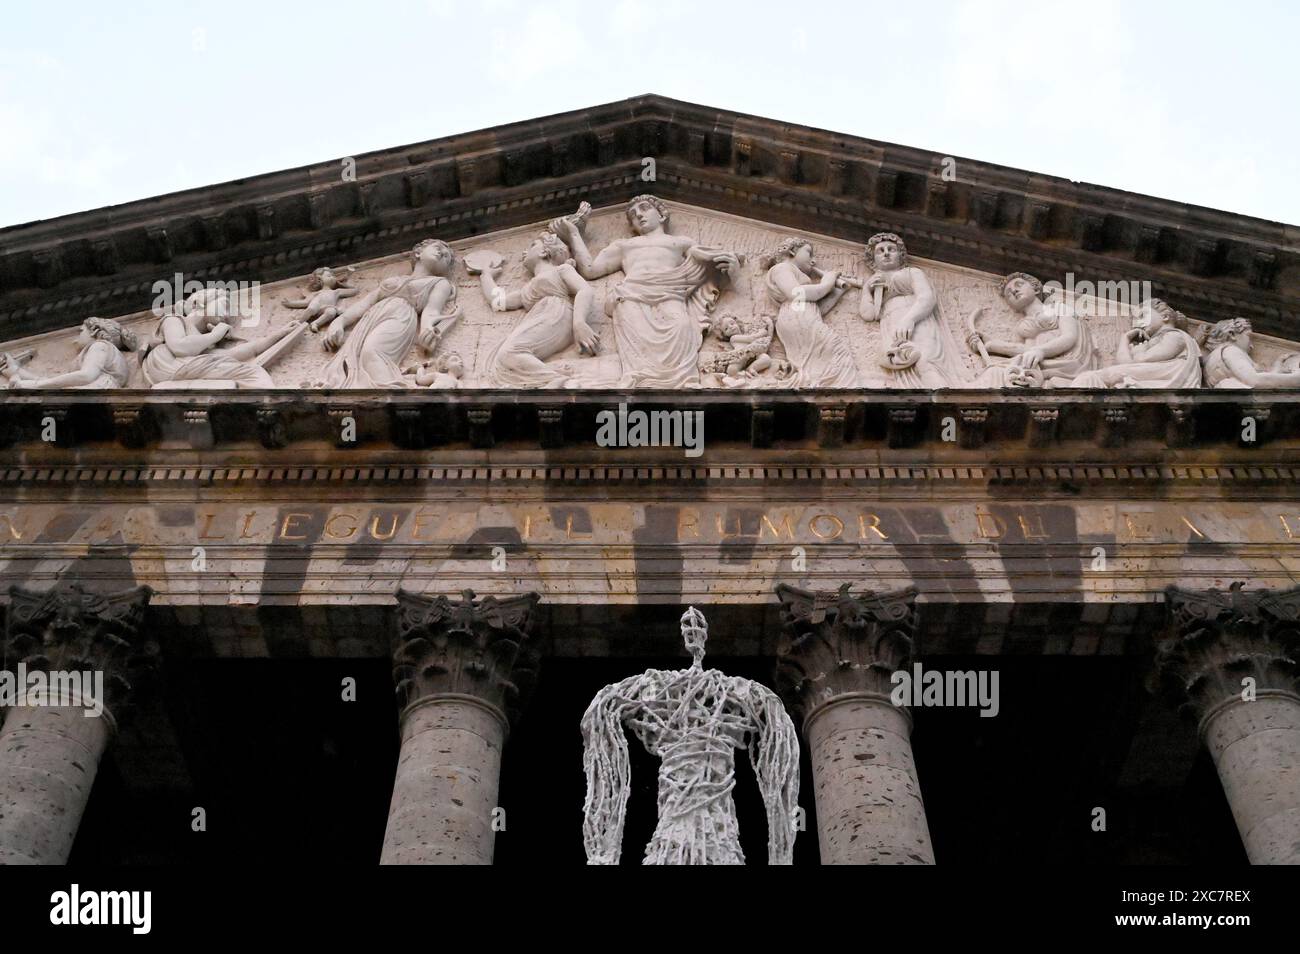 GUADALAJARA, JALISCO, MEXIKO: Nach zehnjähriger Bauzeit wurde das Teatro Degollado mit seinen korinthischen Säulen am 13. September 1866 eingeweiht Stockfoto